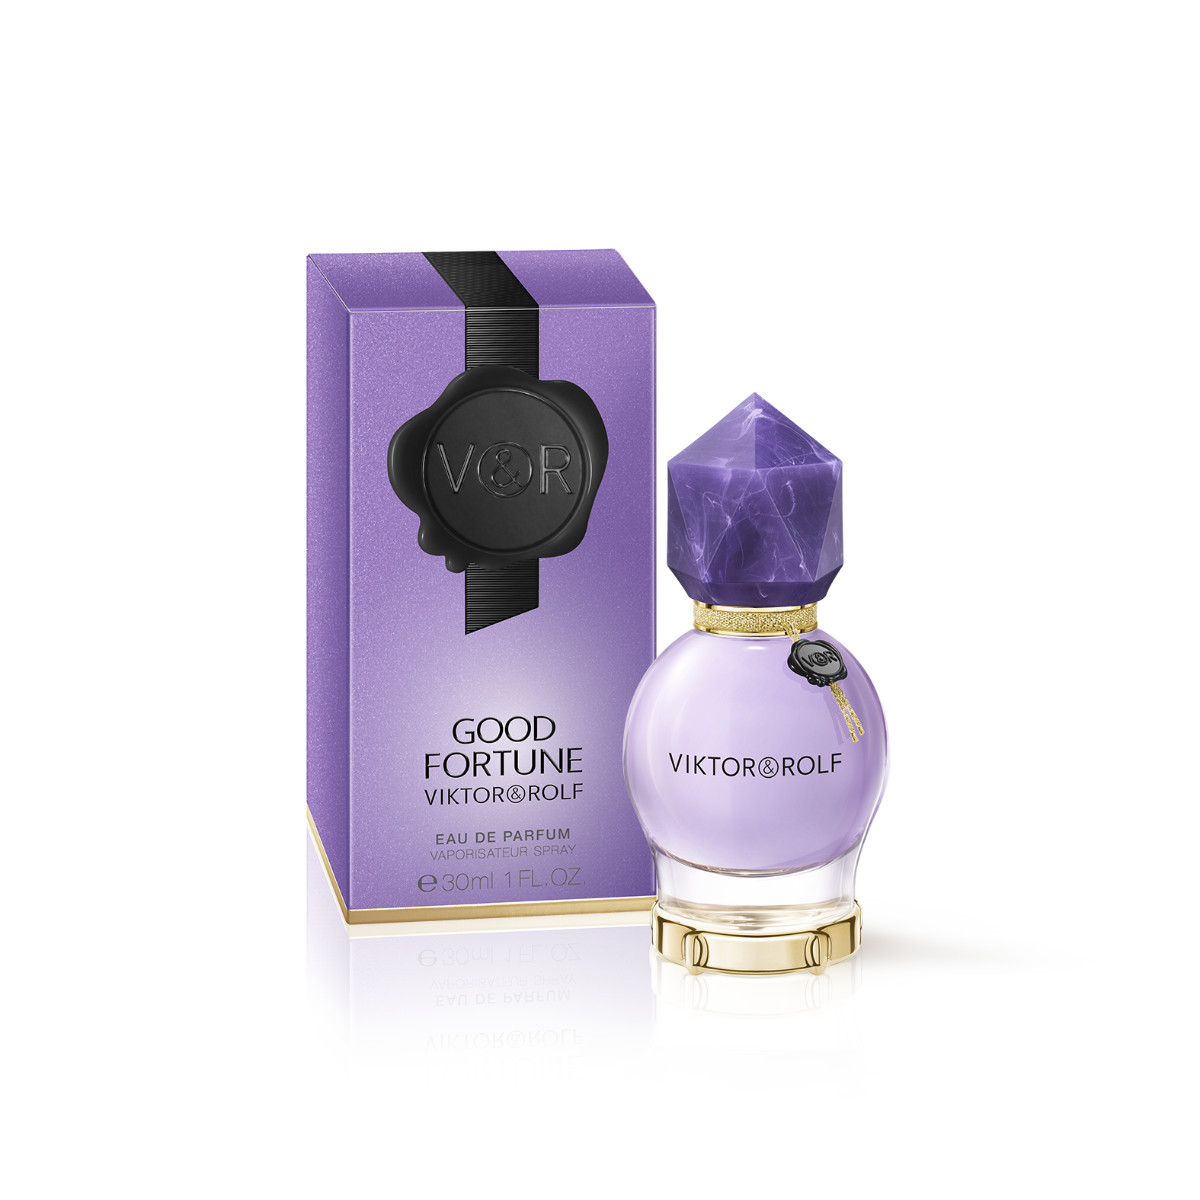 GOOD FORTUNE: The New Eau De Parfum By Viktor&Rolf